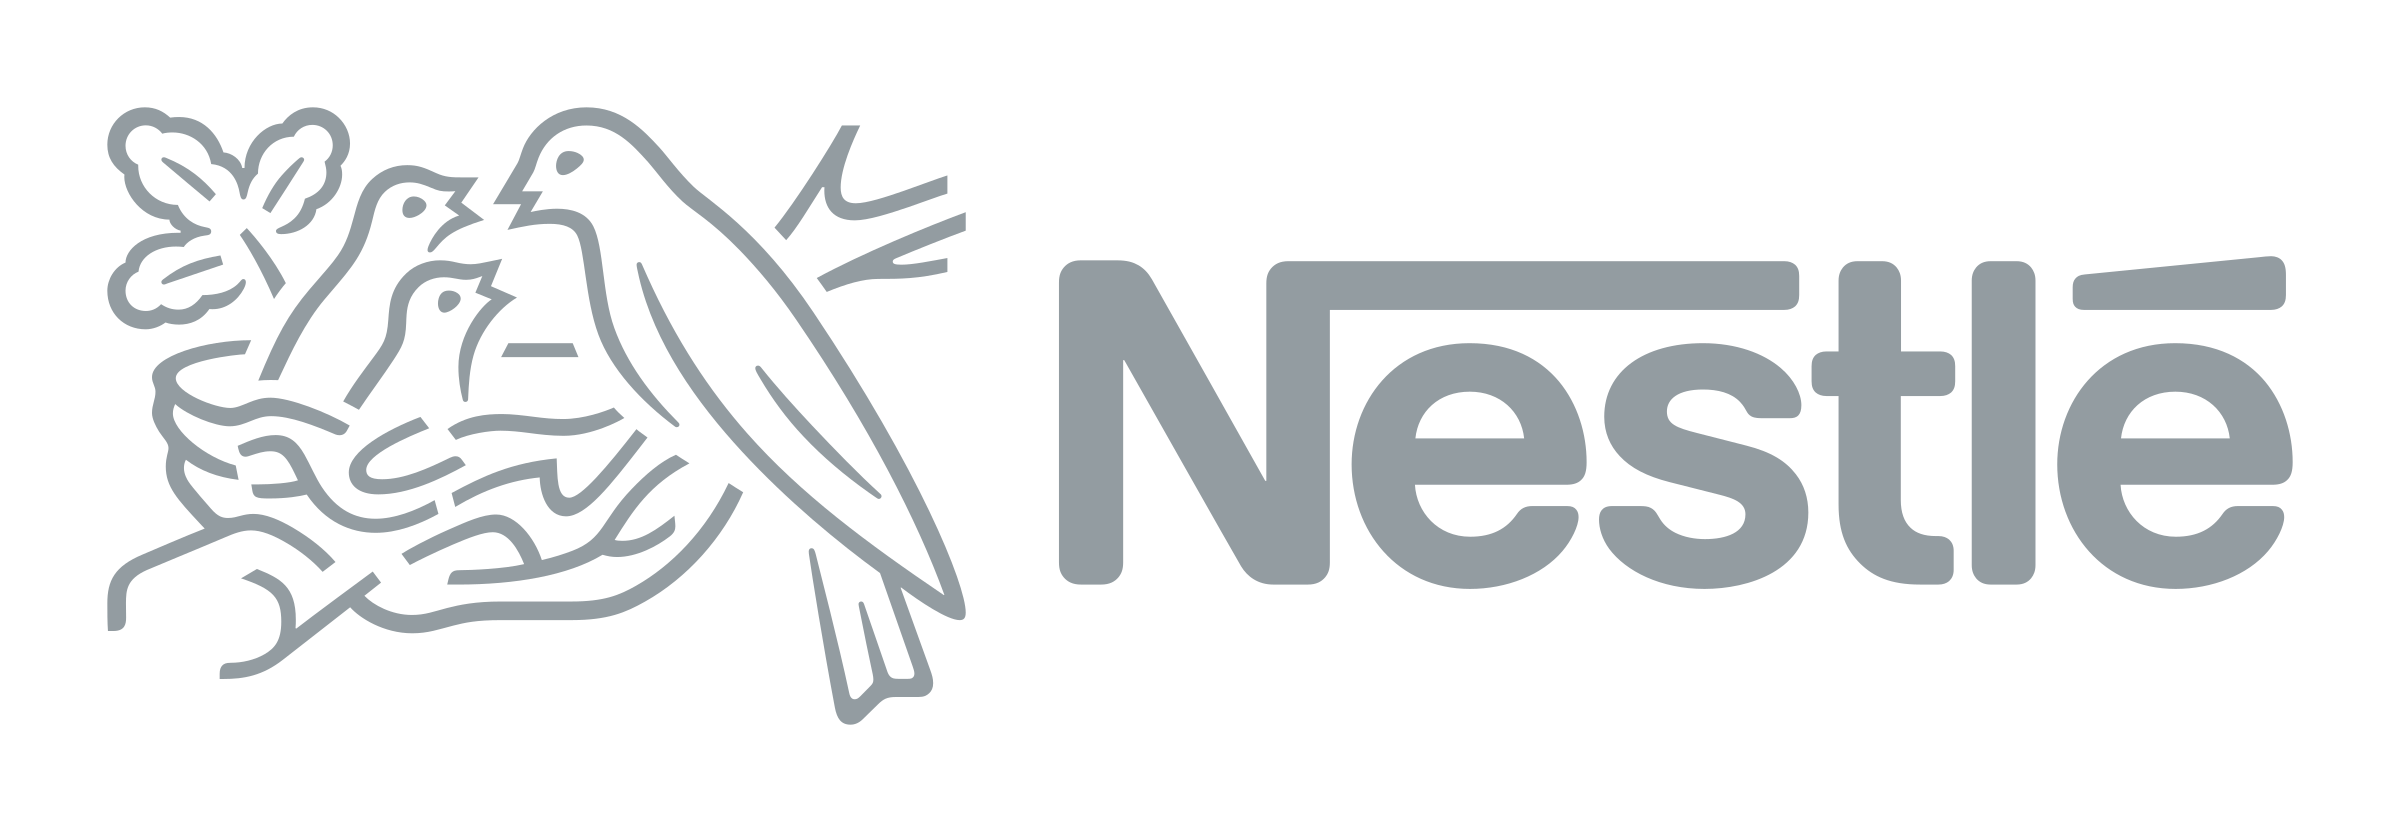 09_nestle-logo-png-transparent.png